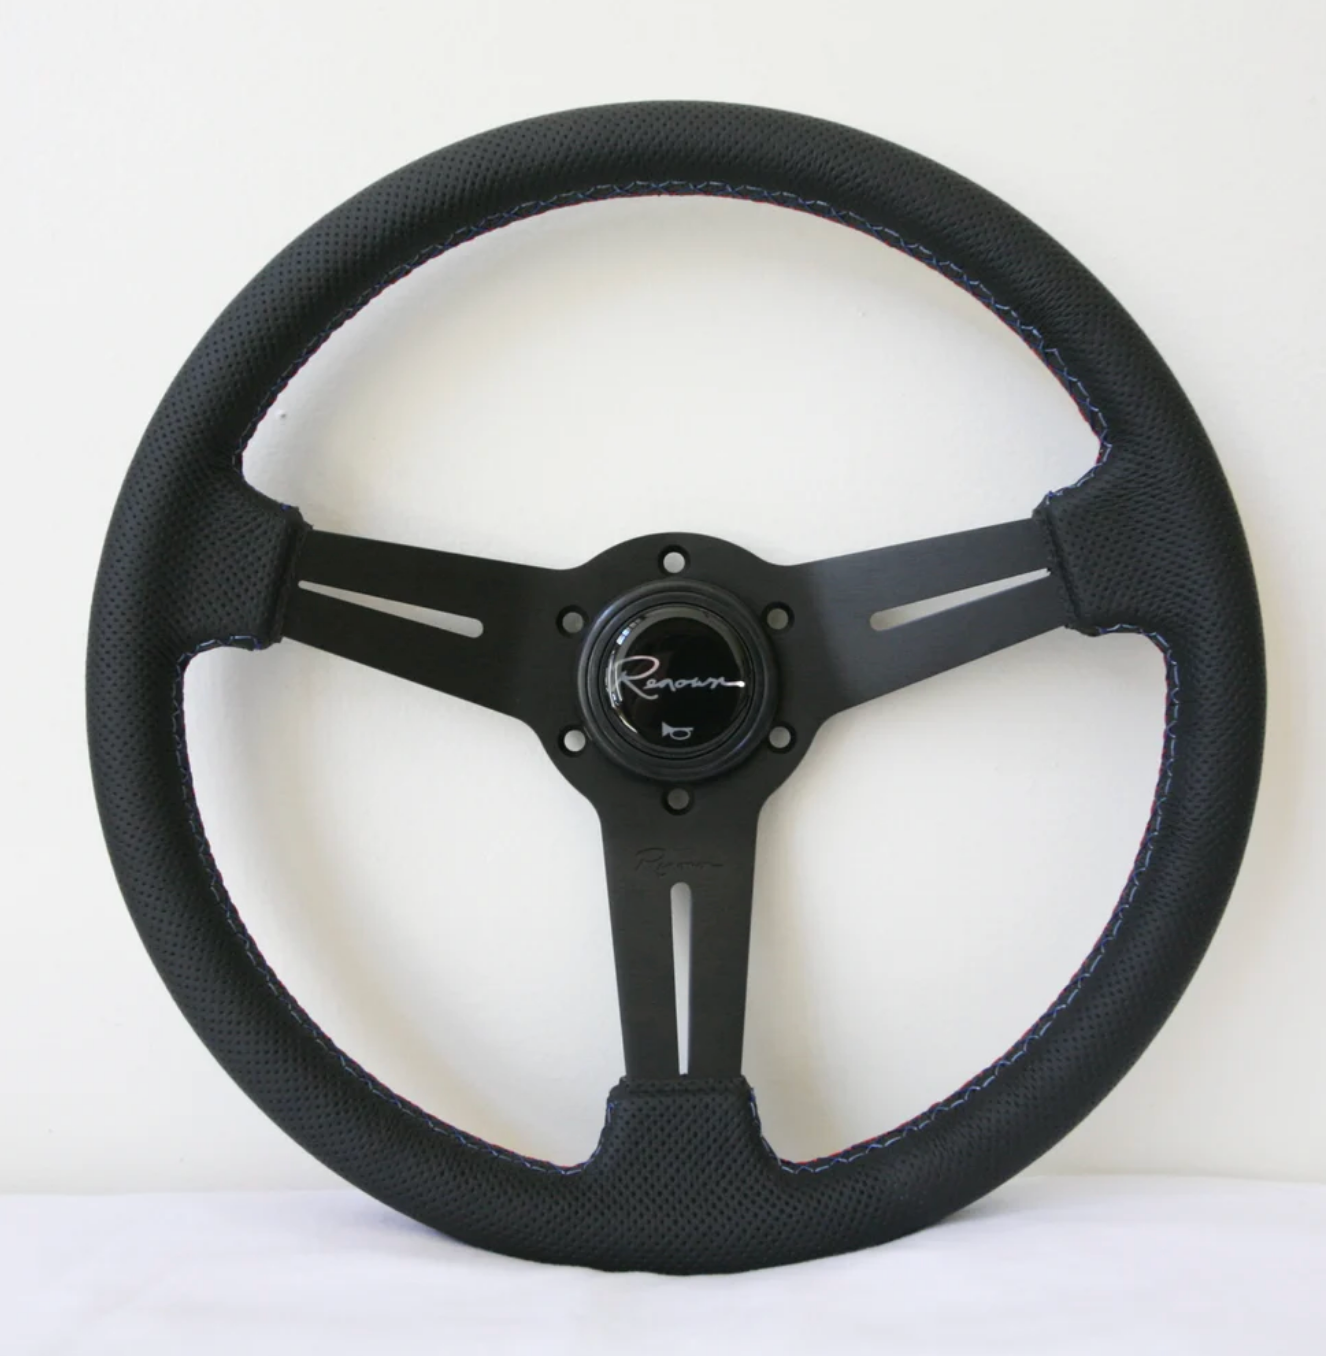 Renown Mille Motorsport Steering Wheel